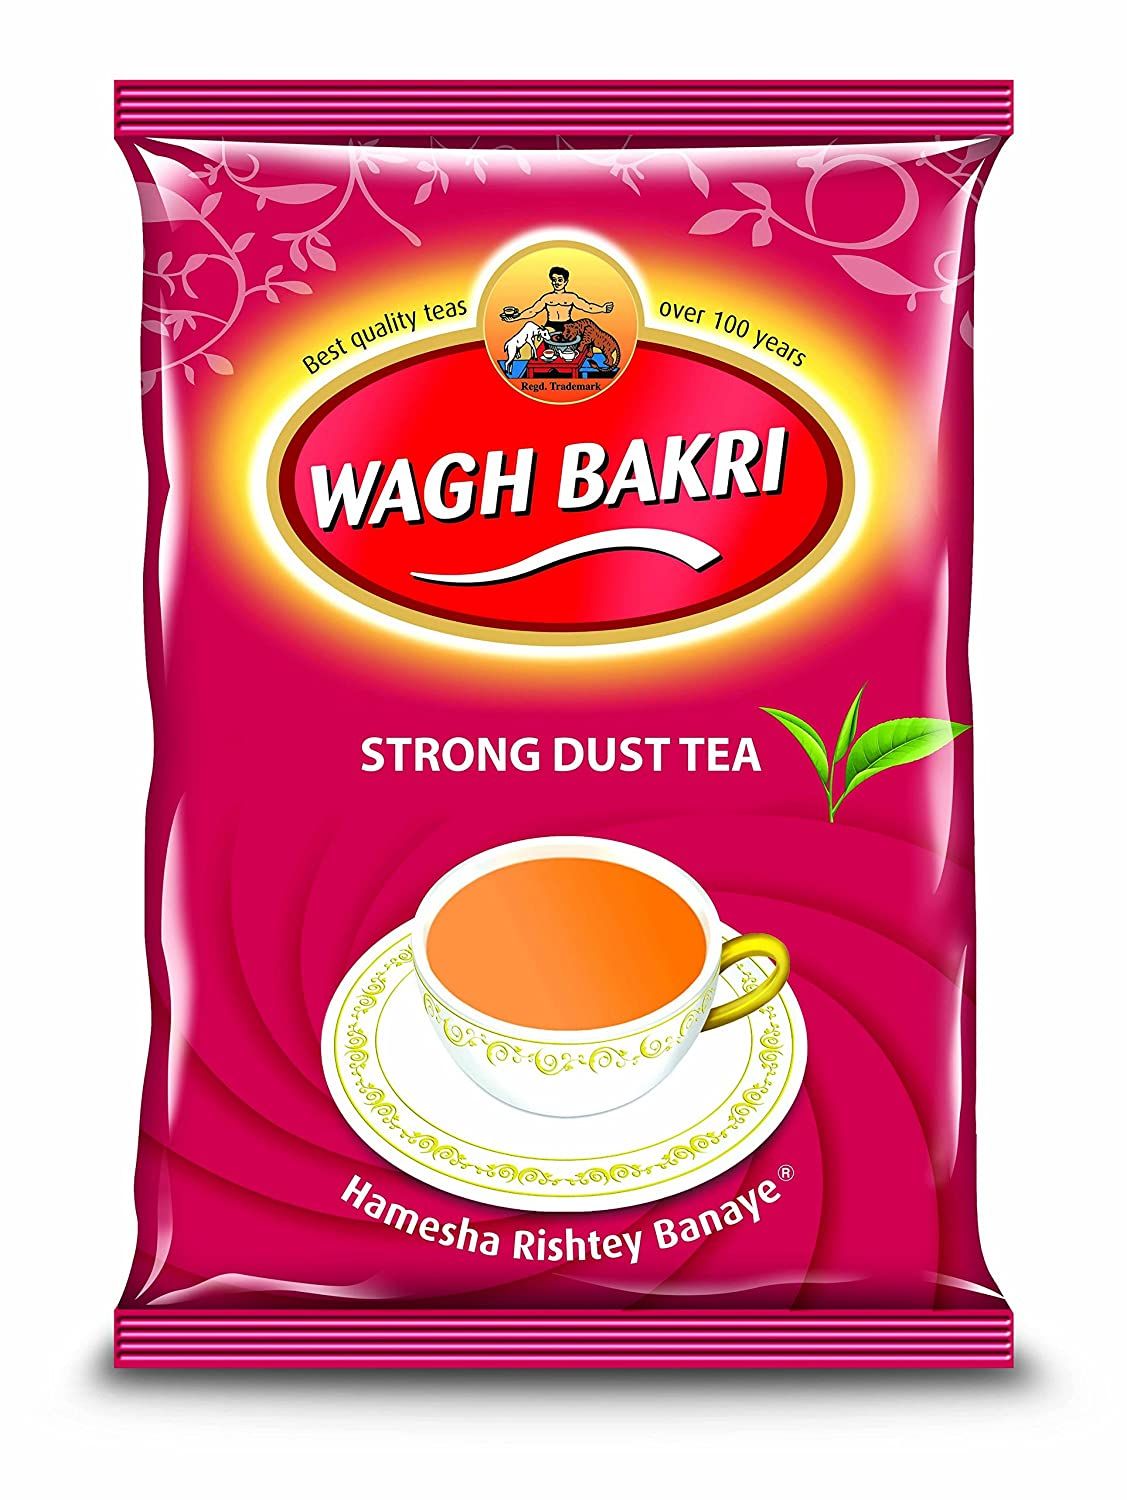 Wagh Bakri Strong Dust Tea Image